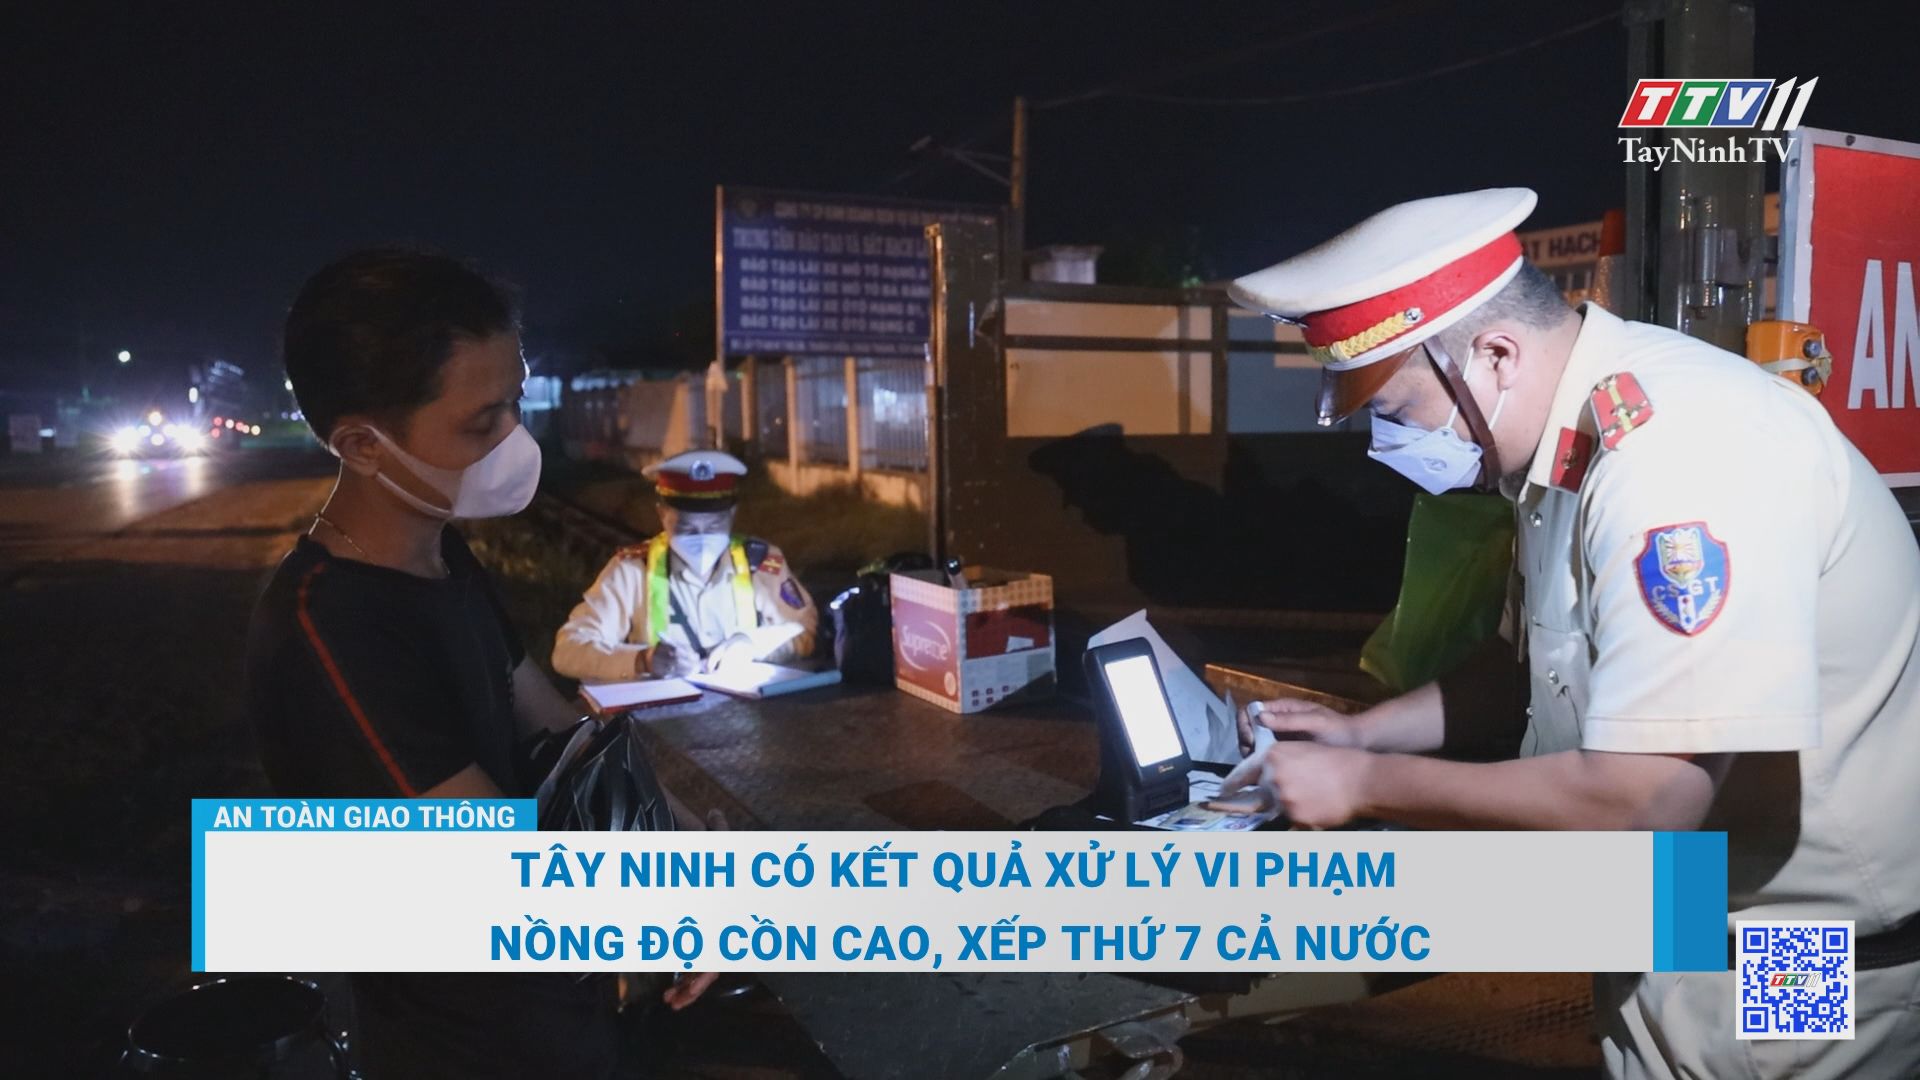 Tây Ninh có kết quả xử lý vi phạm nồng độ cồn cao, xếp thứ 7 cả nước | An toàn giao thông | TayNinhTV